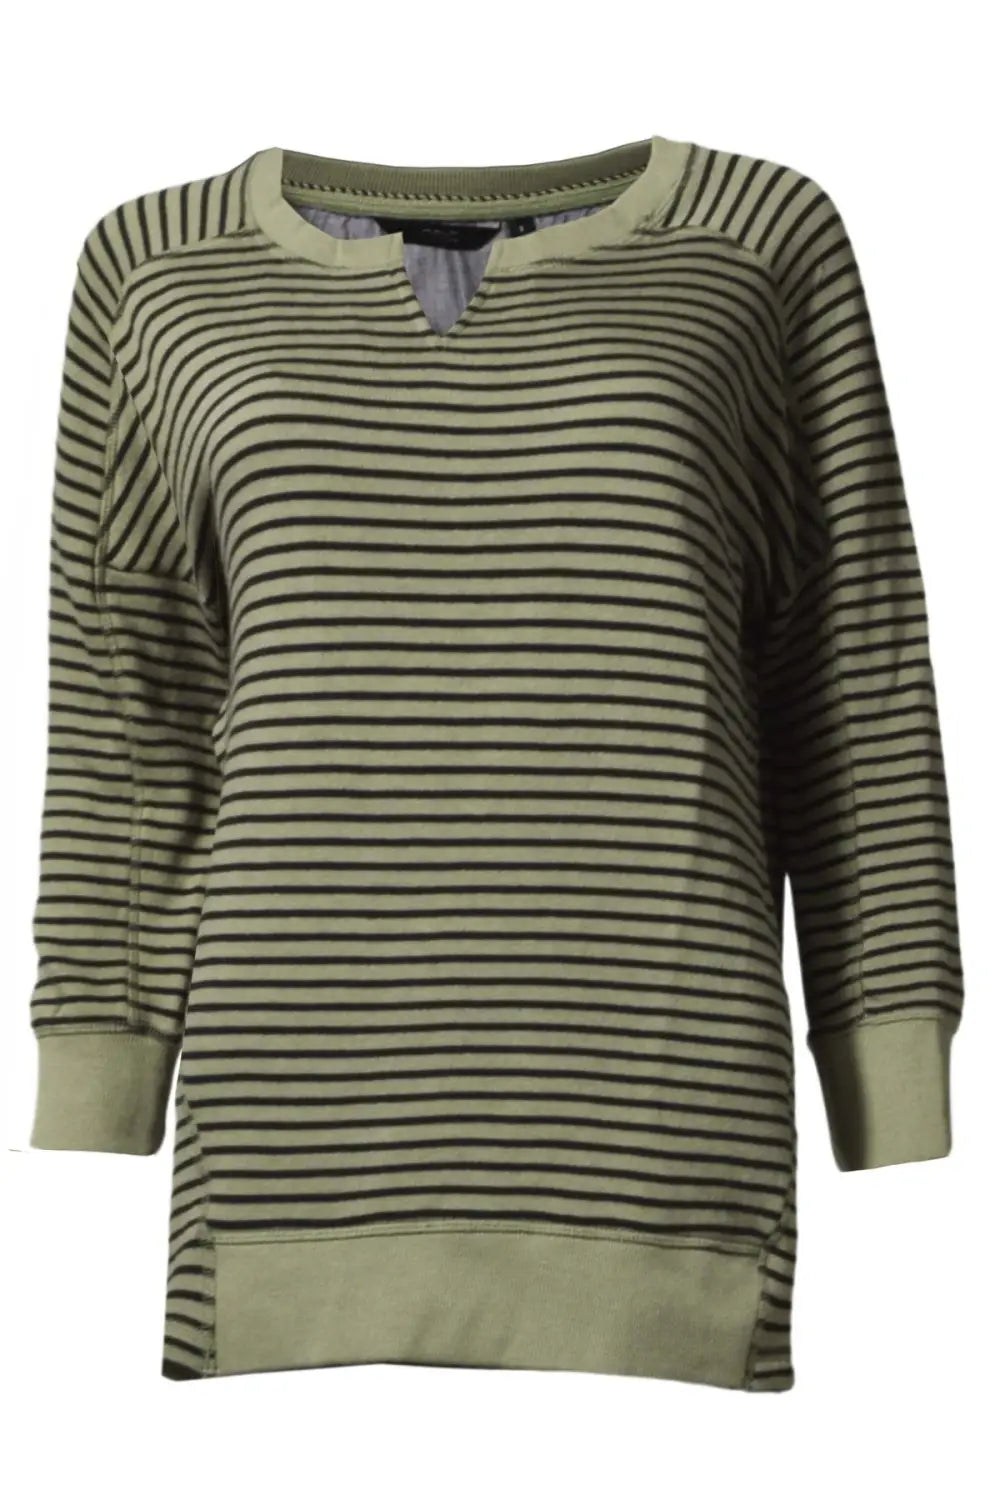 Secret Label Striped Longline Sweatshirt